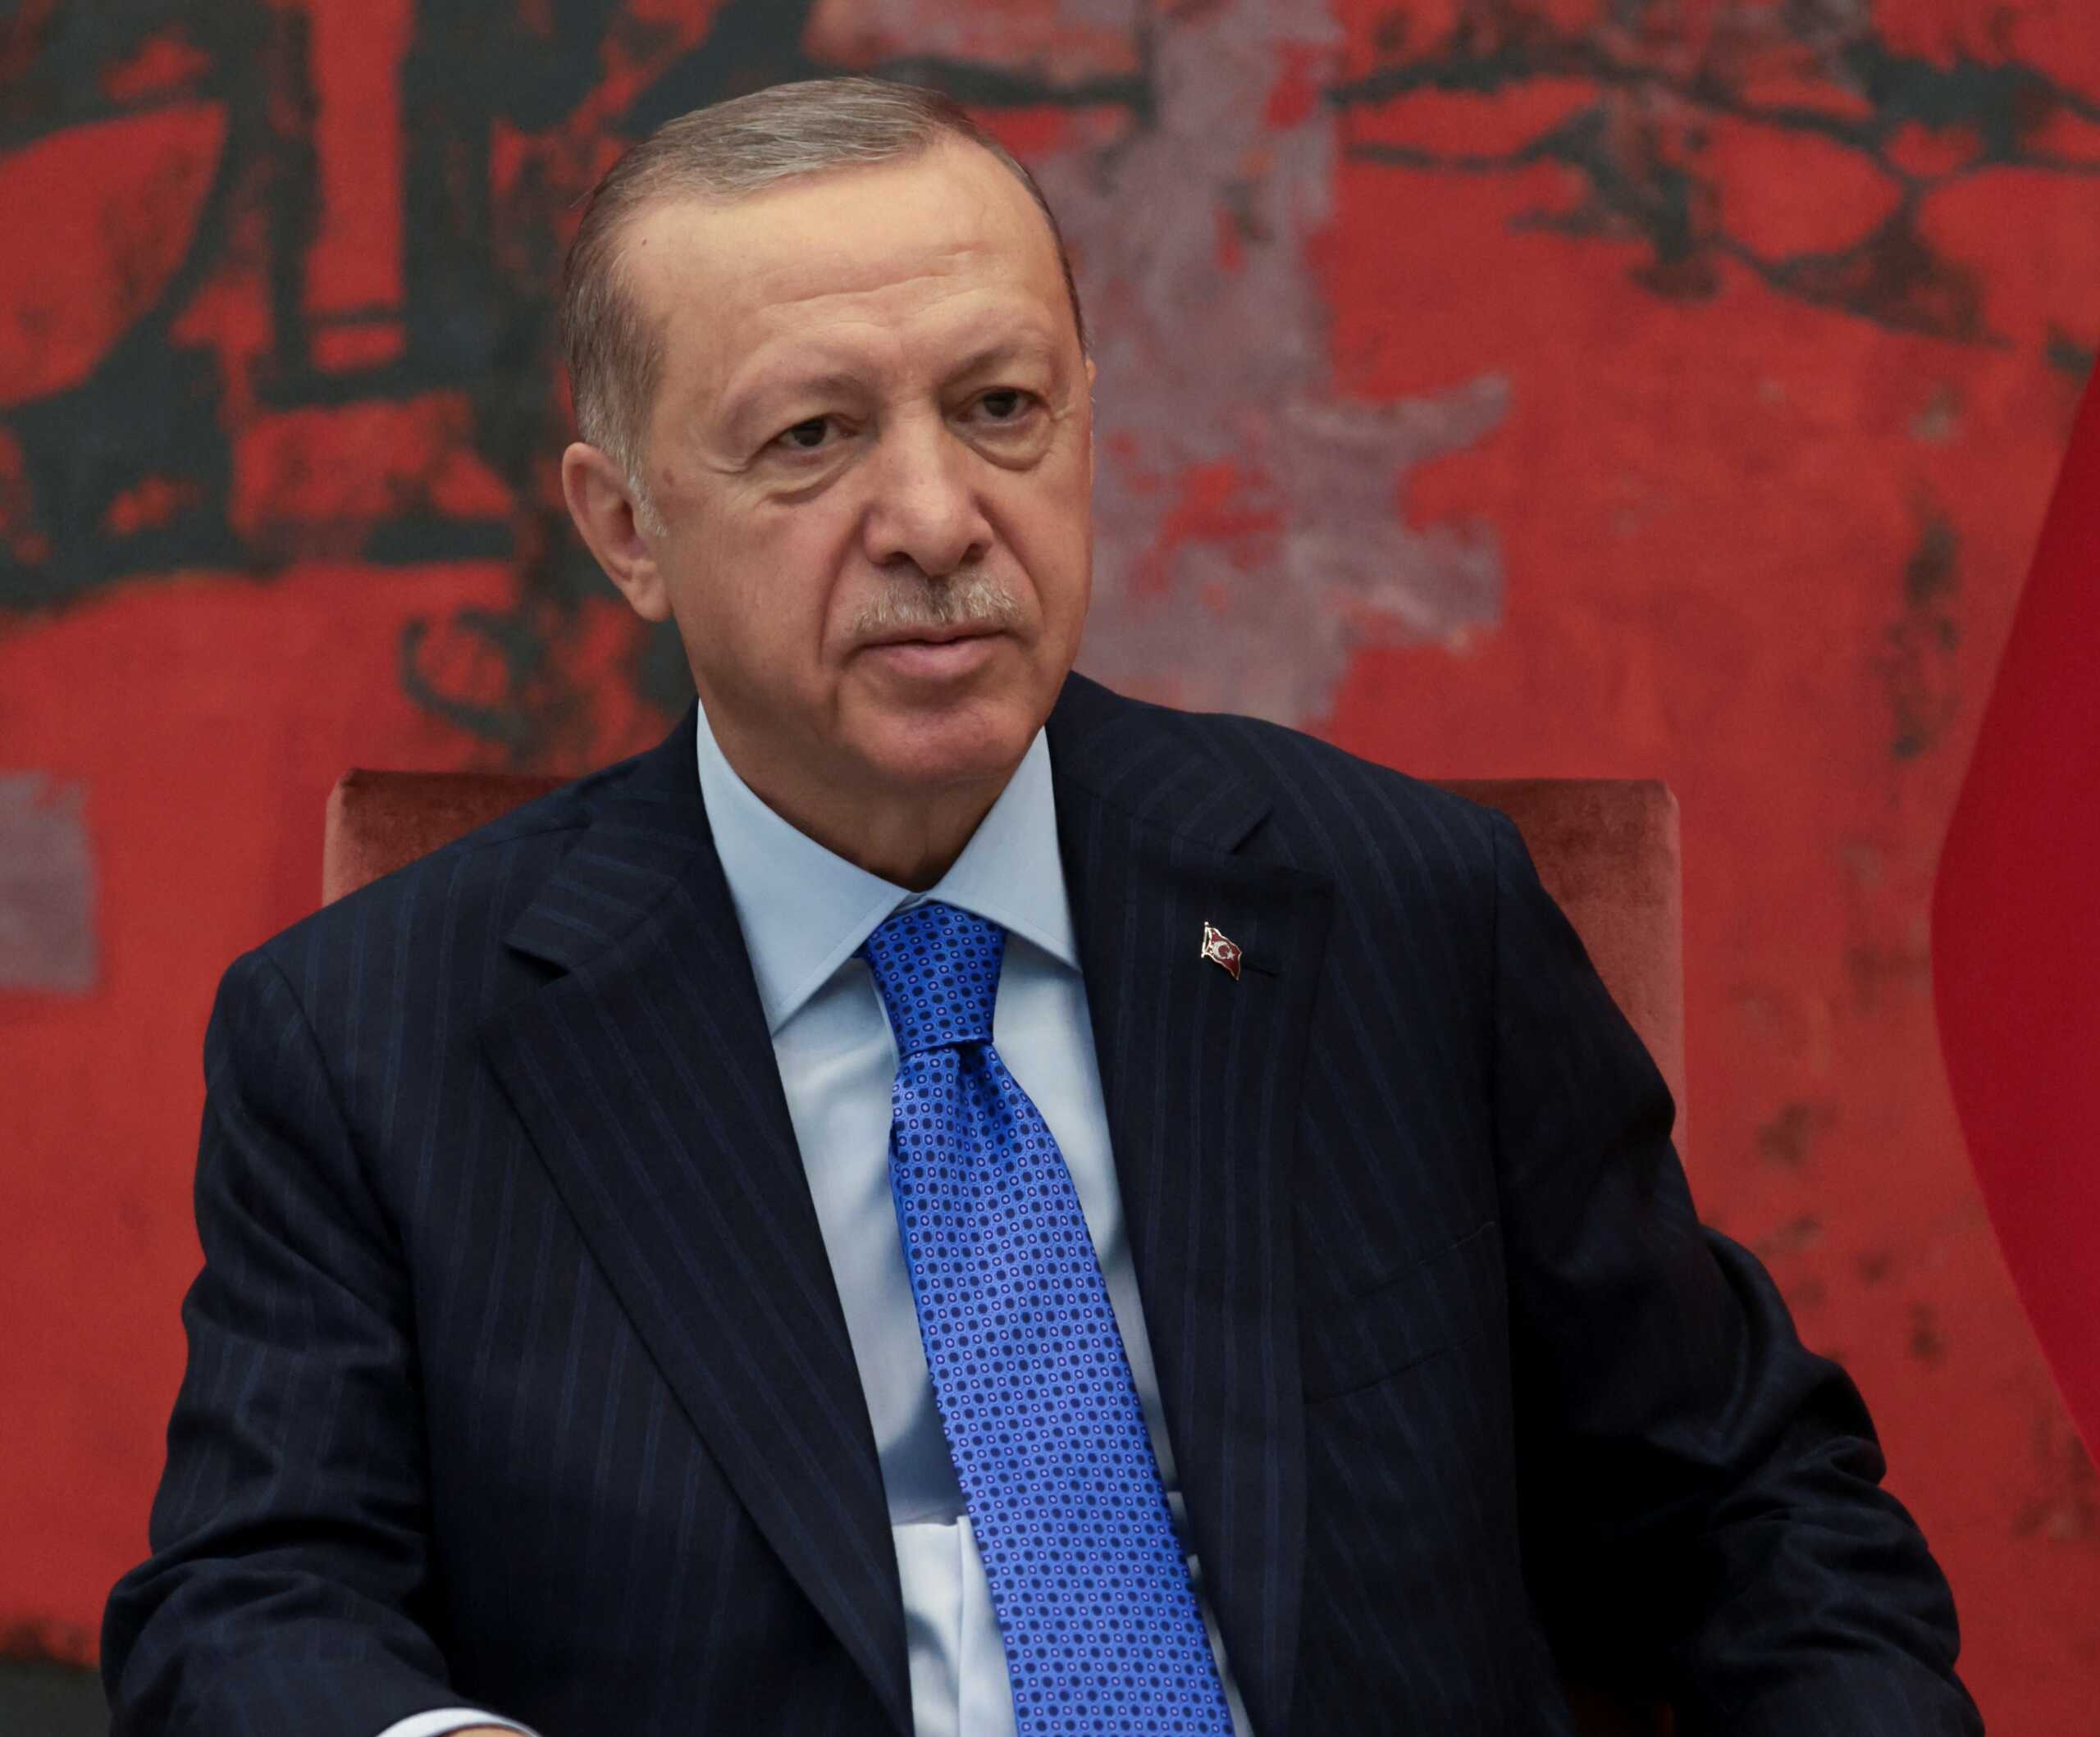 Εκνευρισμός Ερντογάν για τις ΗΠΑ: Στην Ελλάδα δίνουν μαχητικά και στην Τουρκία όχι; Ίσως στραφώ αλλού